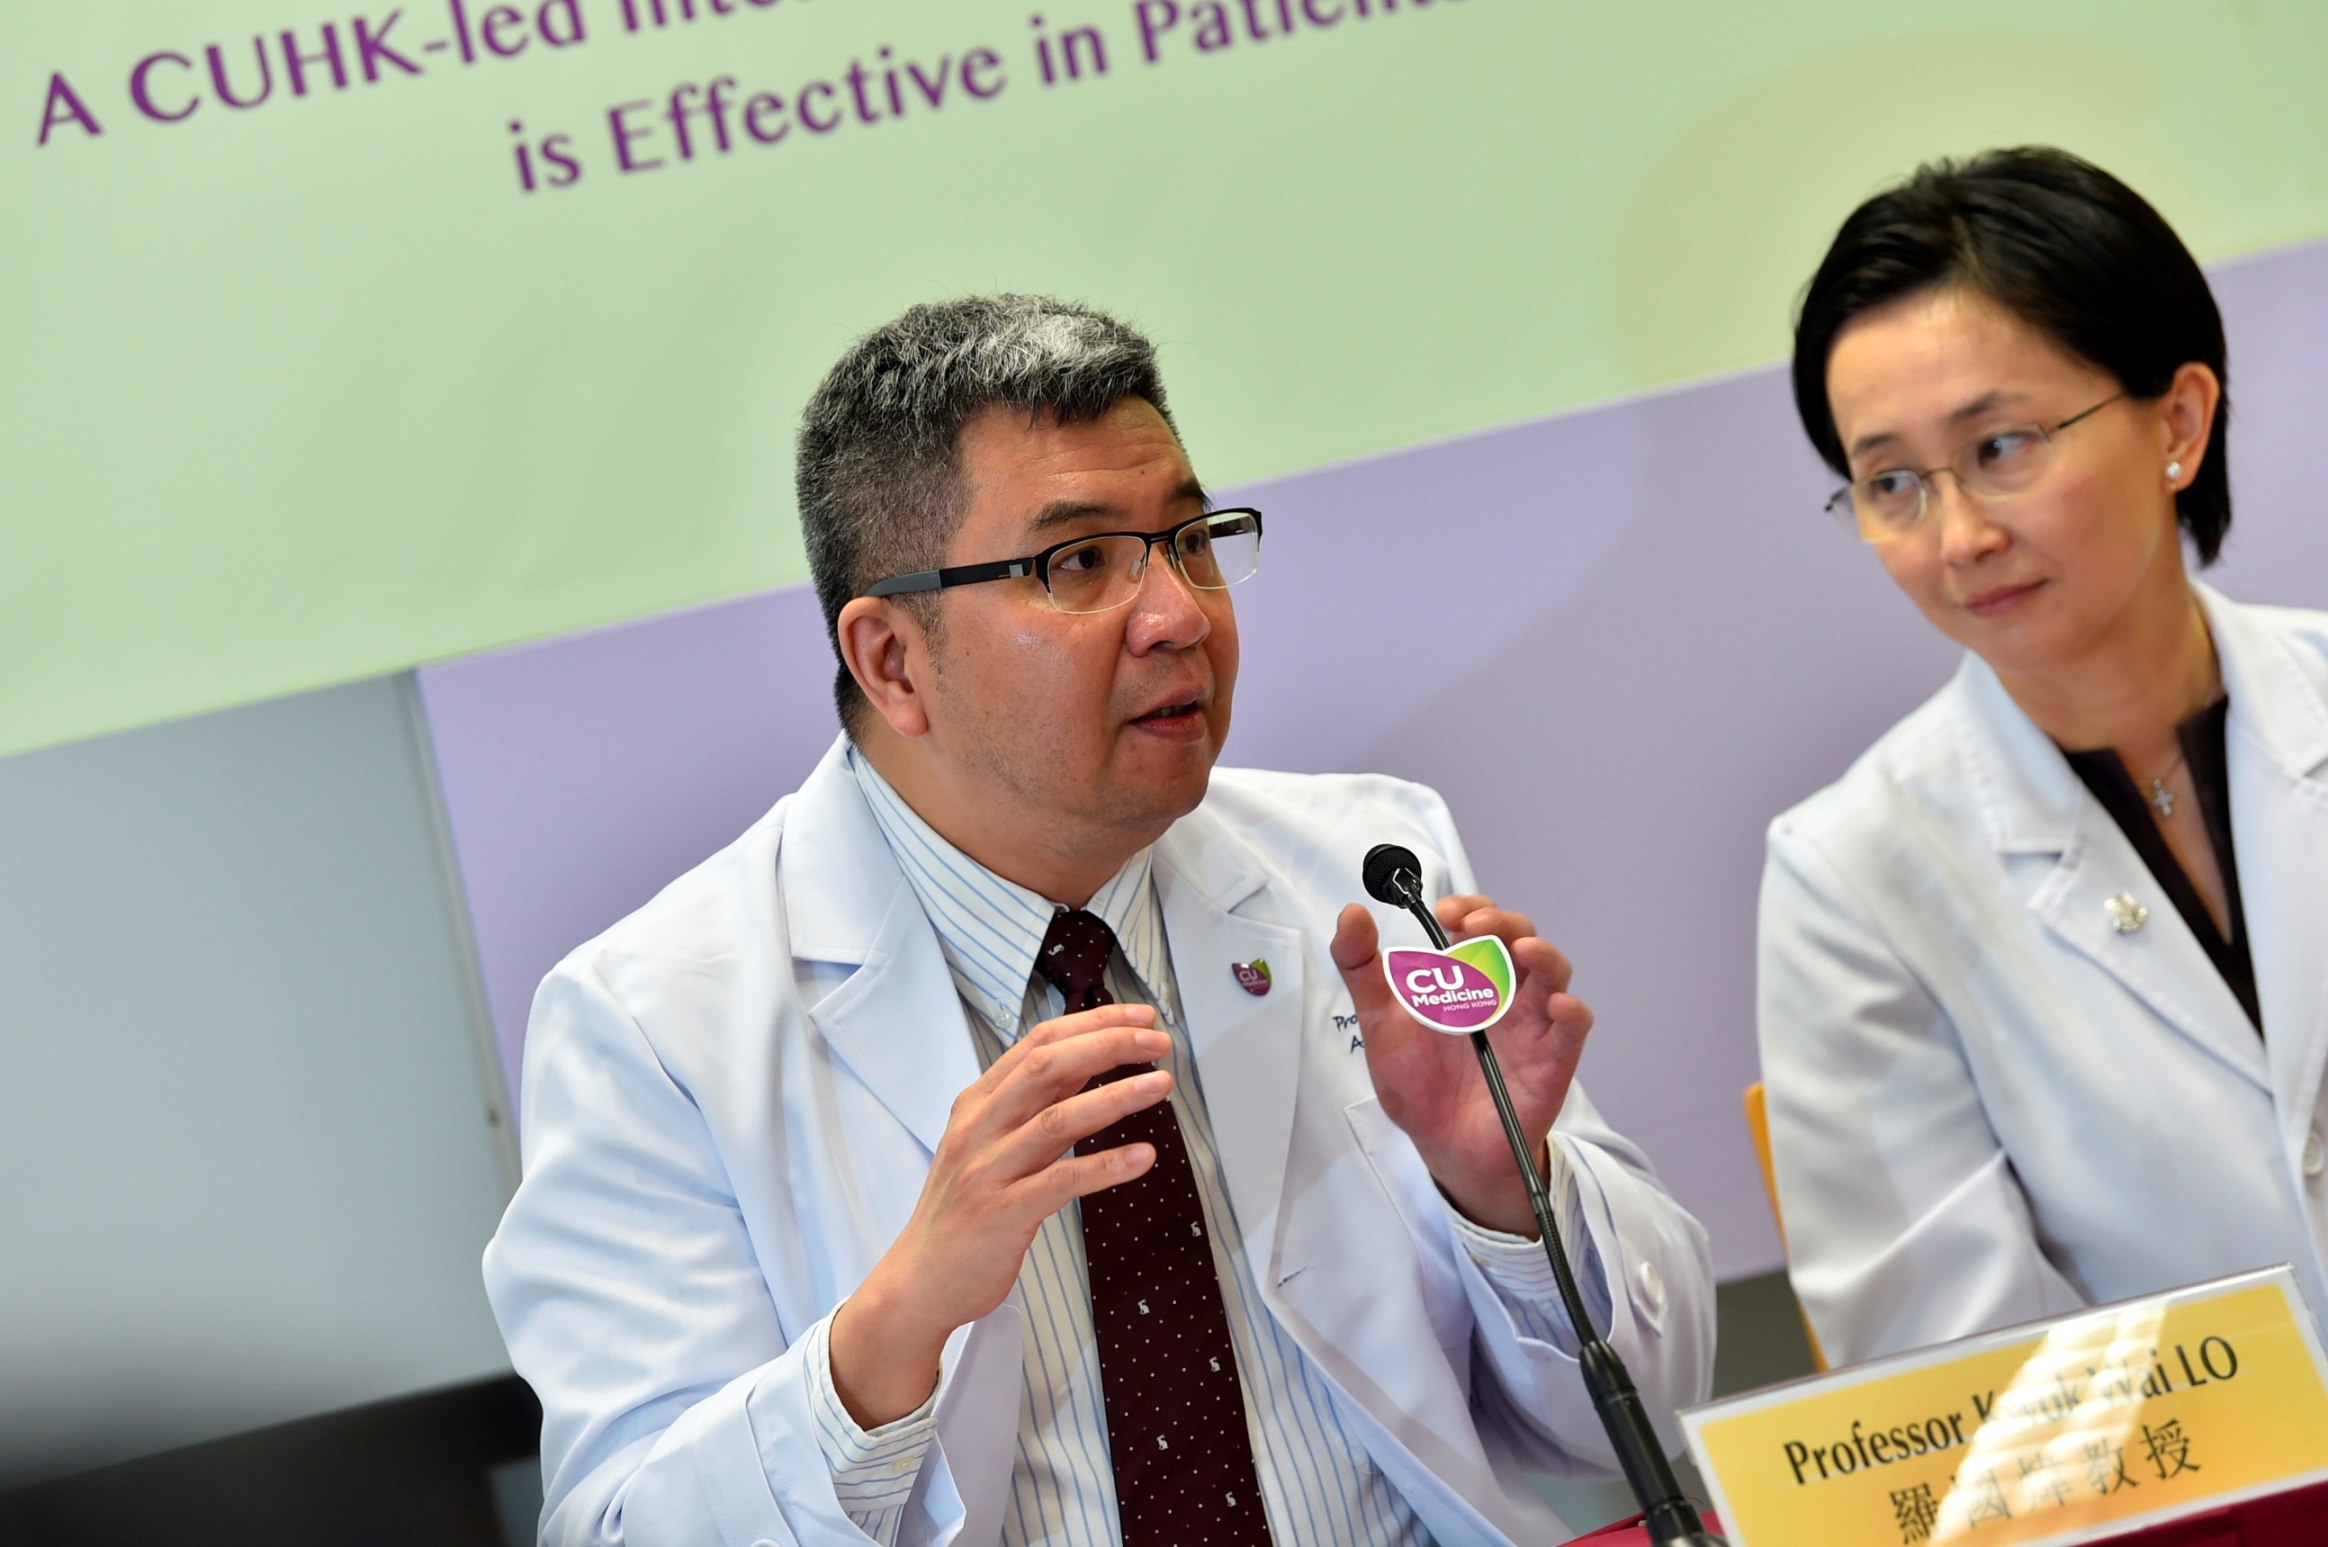 羅國煒教授(左)表示，希望通過找出鼻咽癌患者的生物標記，可促進治療後評估和精準治療的發展，從而提高治療效果。